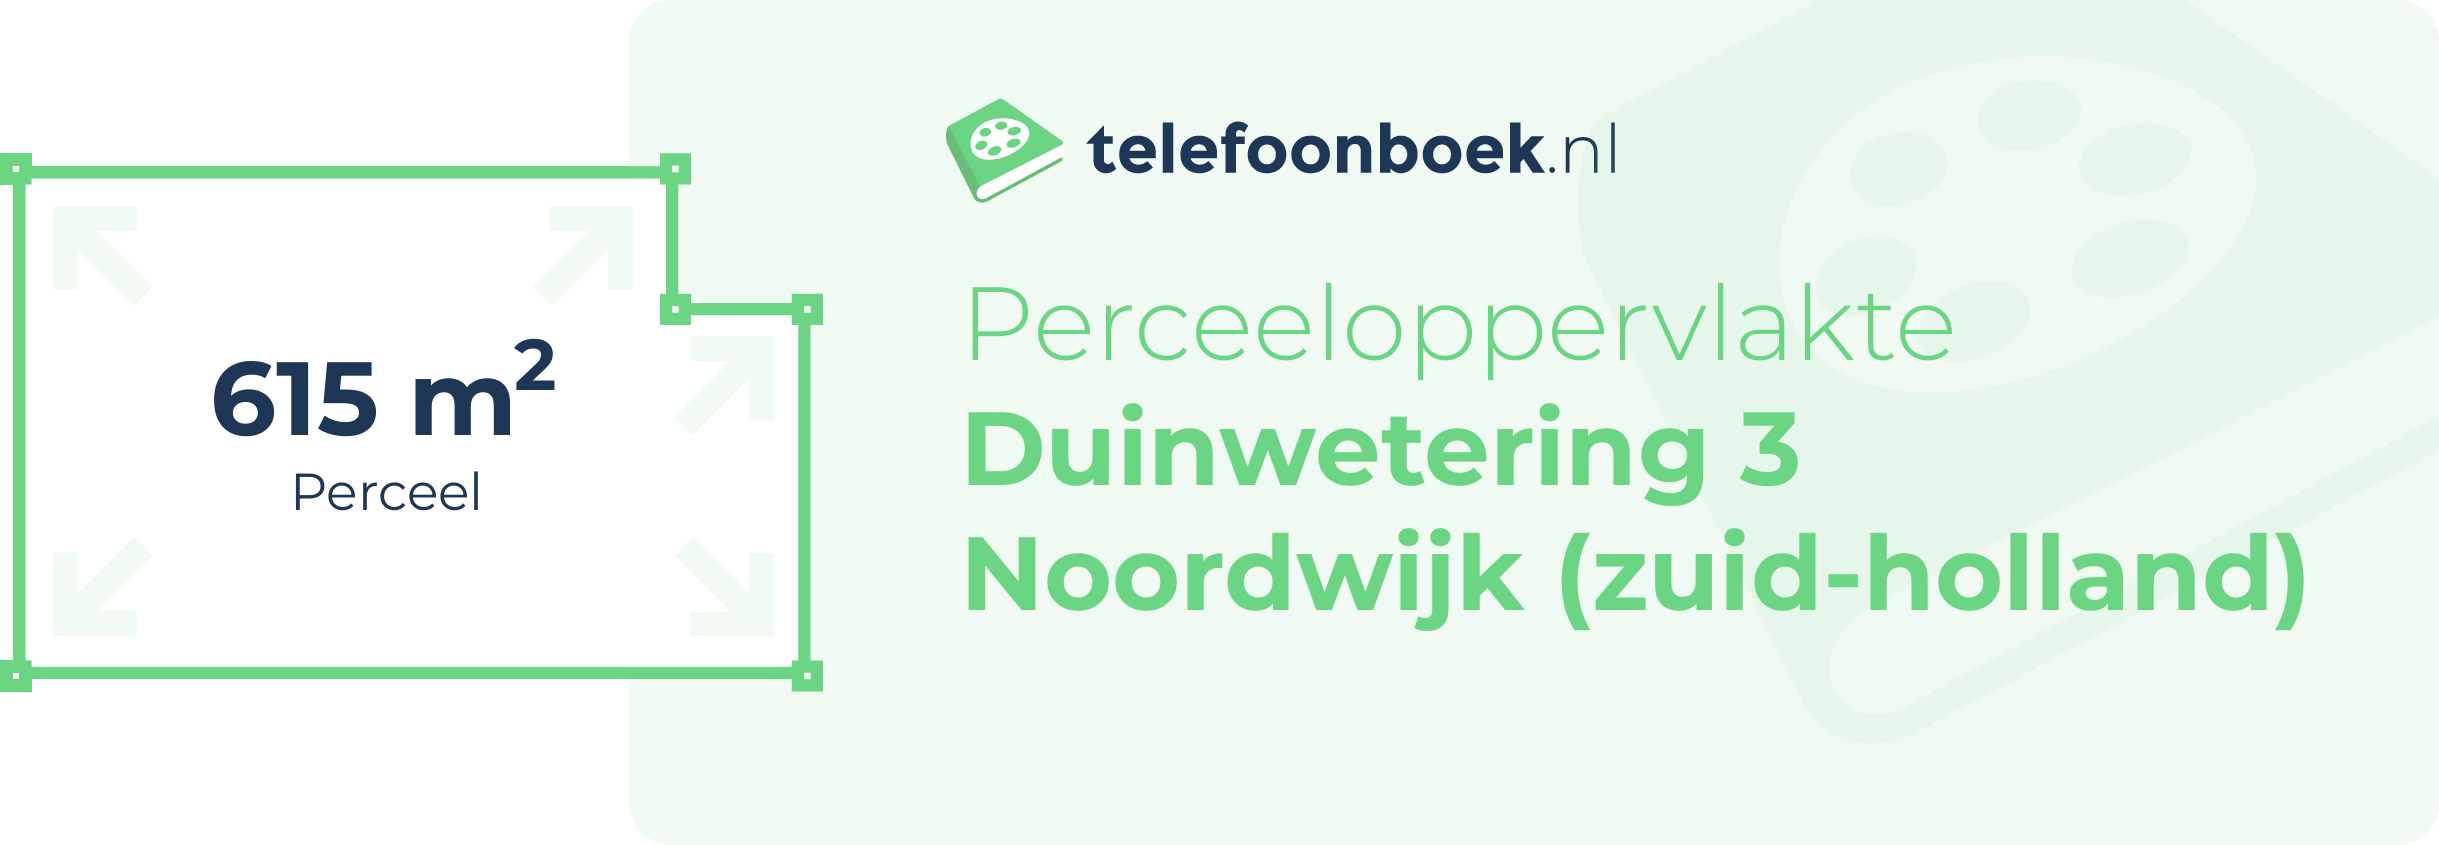 Perceeloppervlakte Duinwetering 3 Noordwijk (Zuid-Holland)